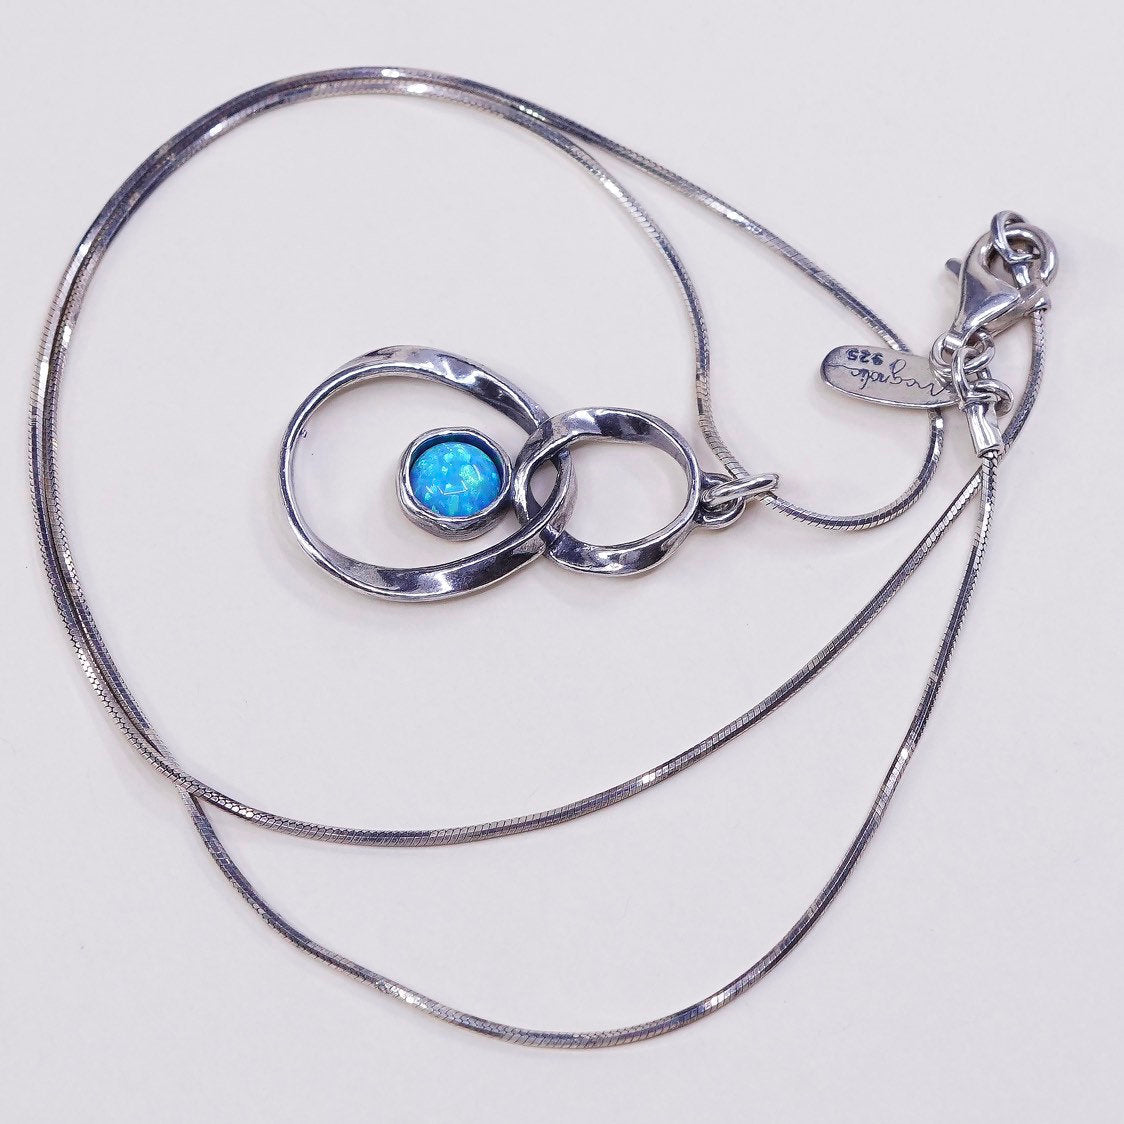 16", 1mm, vtg shablool sterling silver snake chain w/ handmade opal pendant